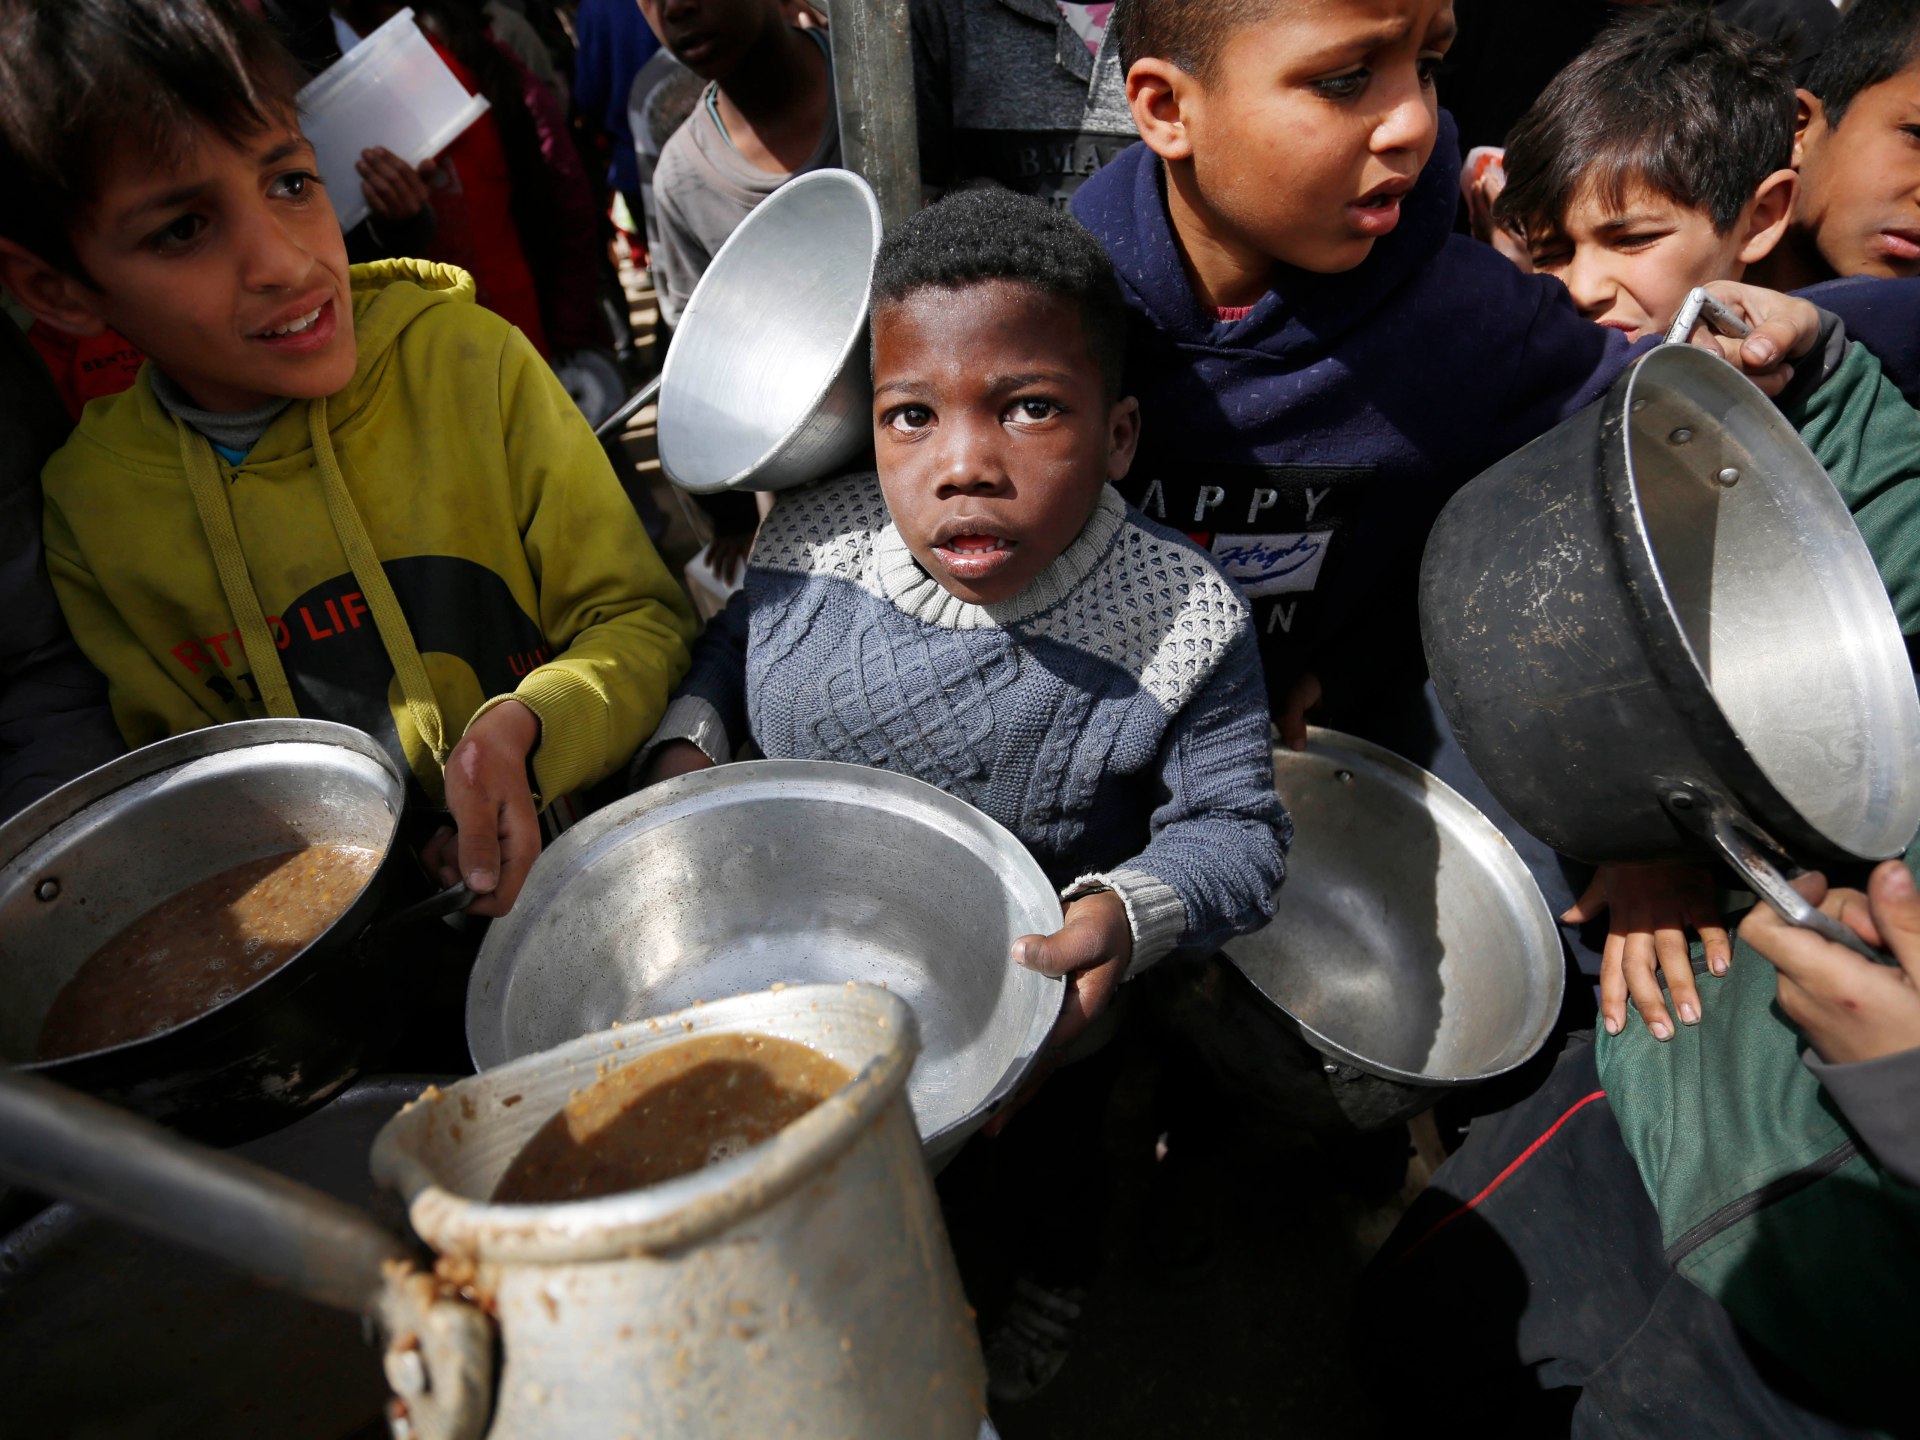 الجوع يفتك بأطفال غزة وبقية ضحايا مجزرة الطحين لا يزالون على الشاطئ | أخبار – البوكس نيوز